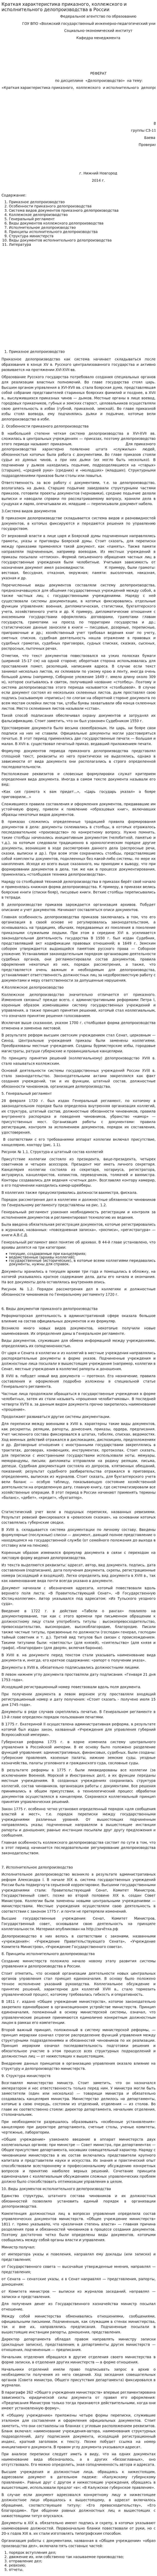 Краткая характеристика приказного, коллежского и исполнительного делопроизводства в России